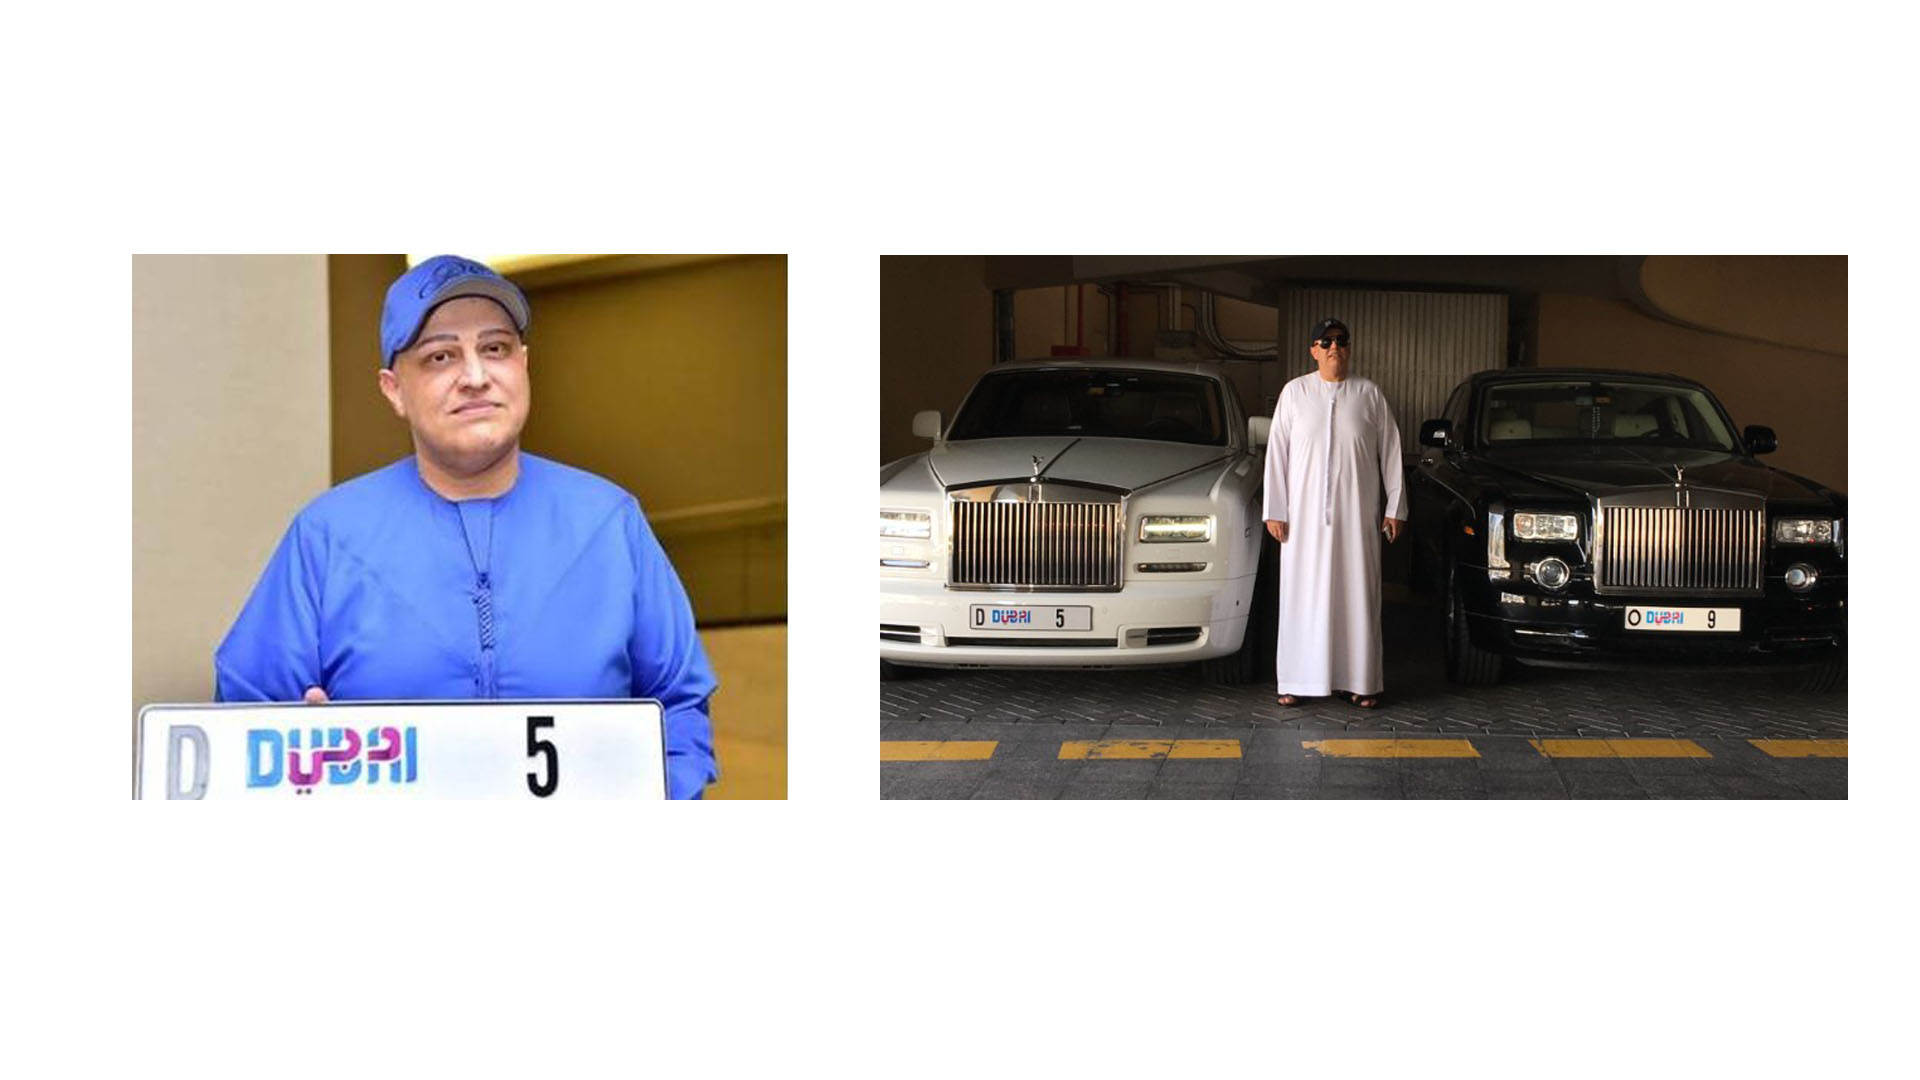 La subasta en los Emiratos Árabes Unidos es un atractivo ya que solo se les permite 5 dígitos y existen solo 10 con un solo dígito